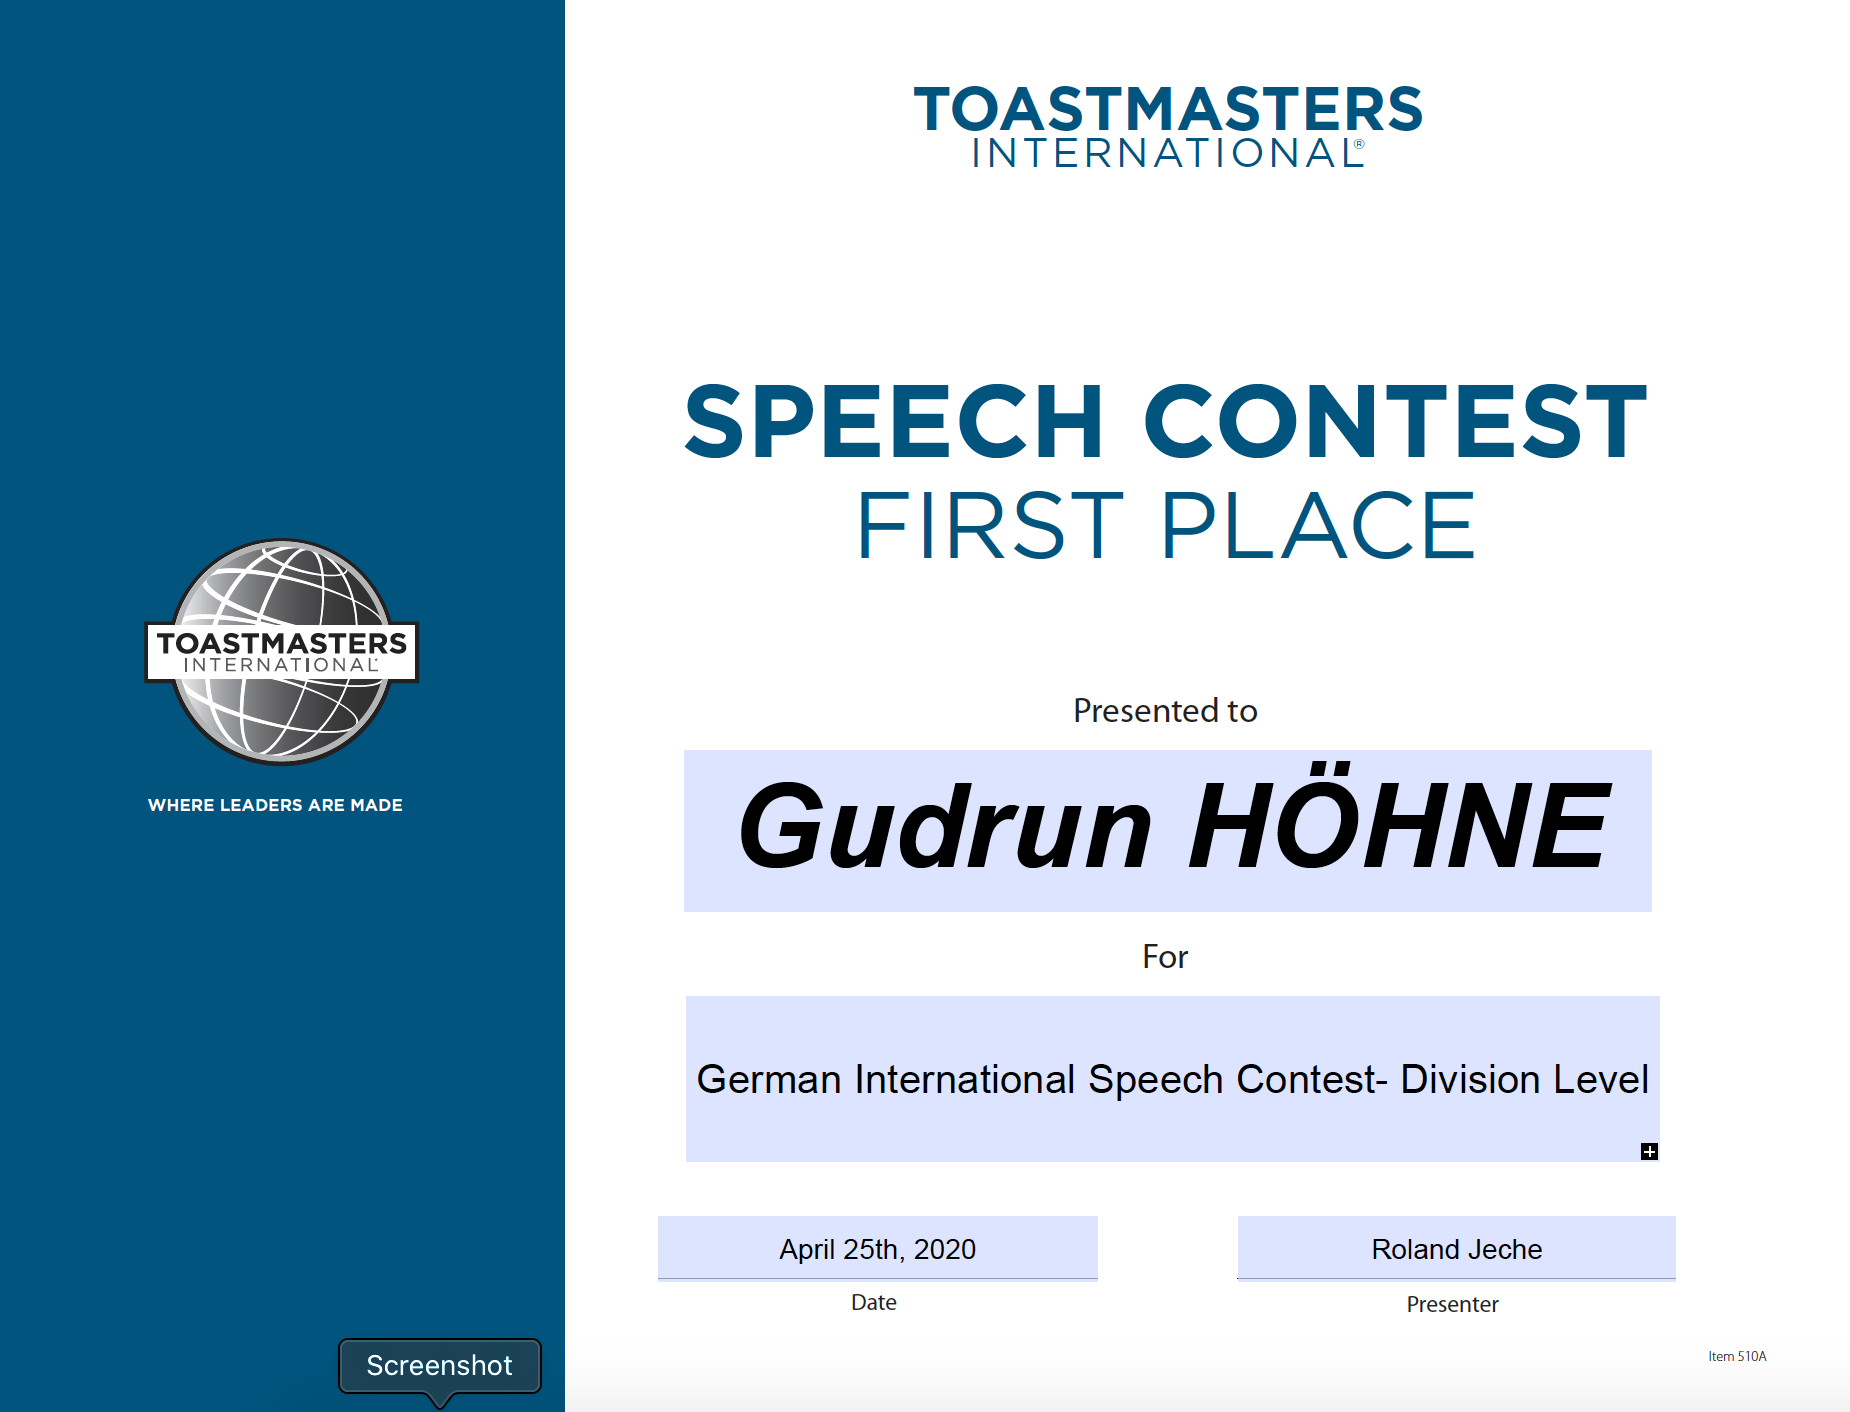 Gudrun Hoehne Redewettbewerb 1. Platz 2020